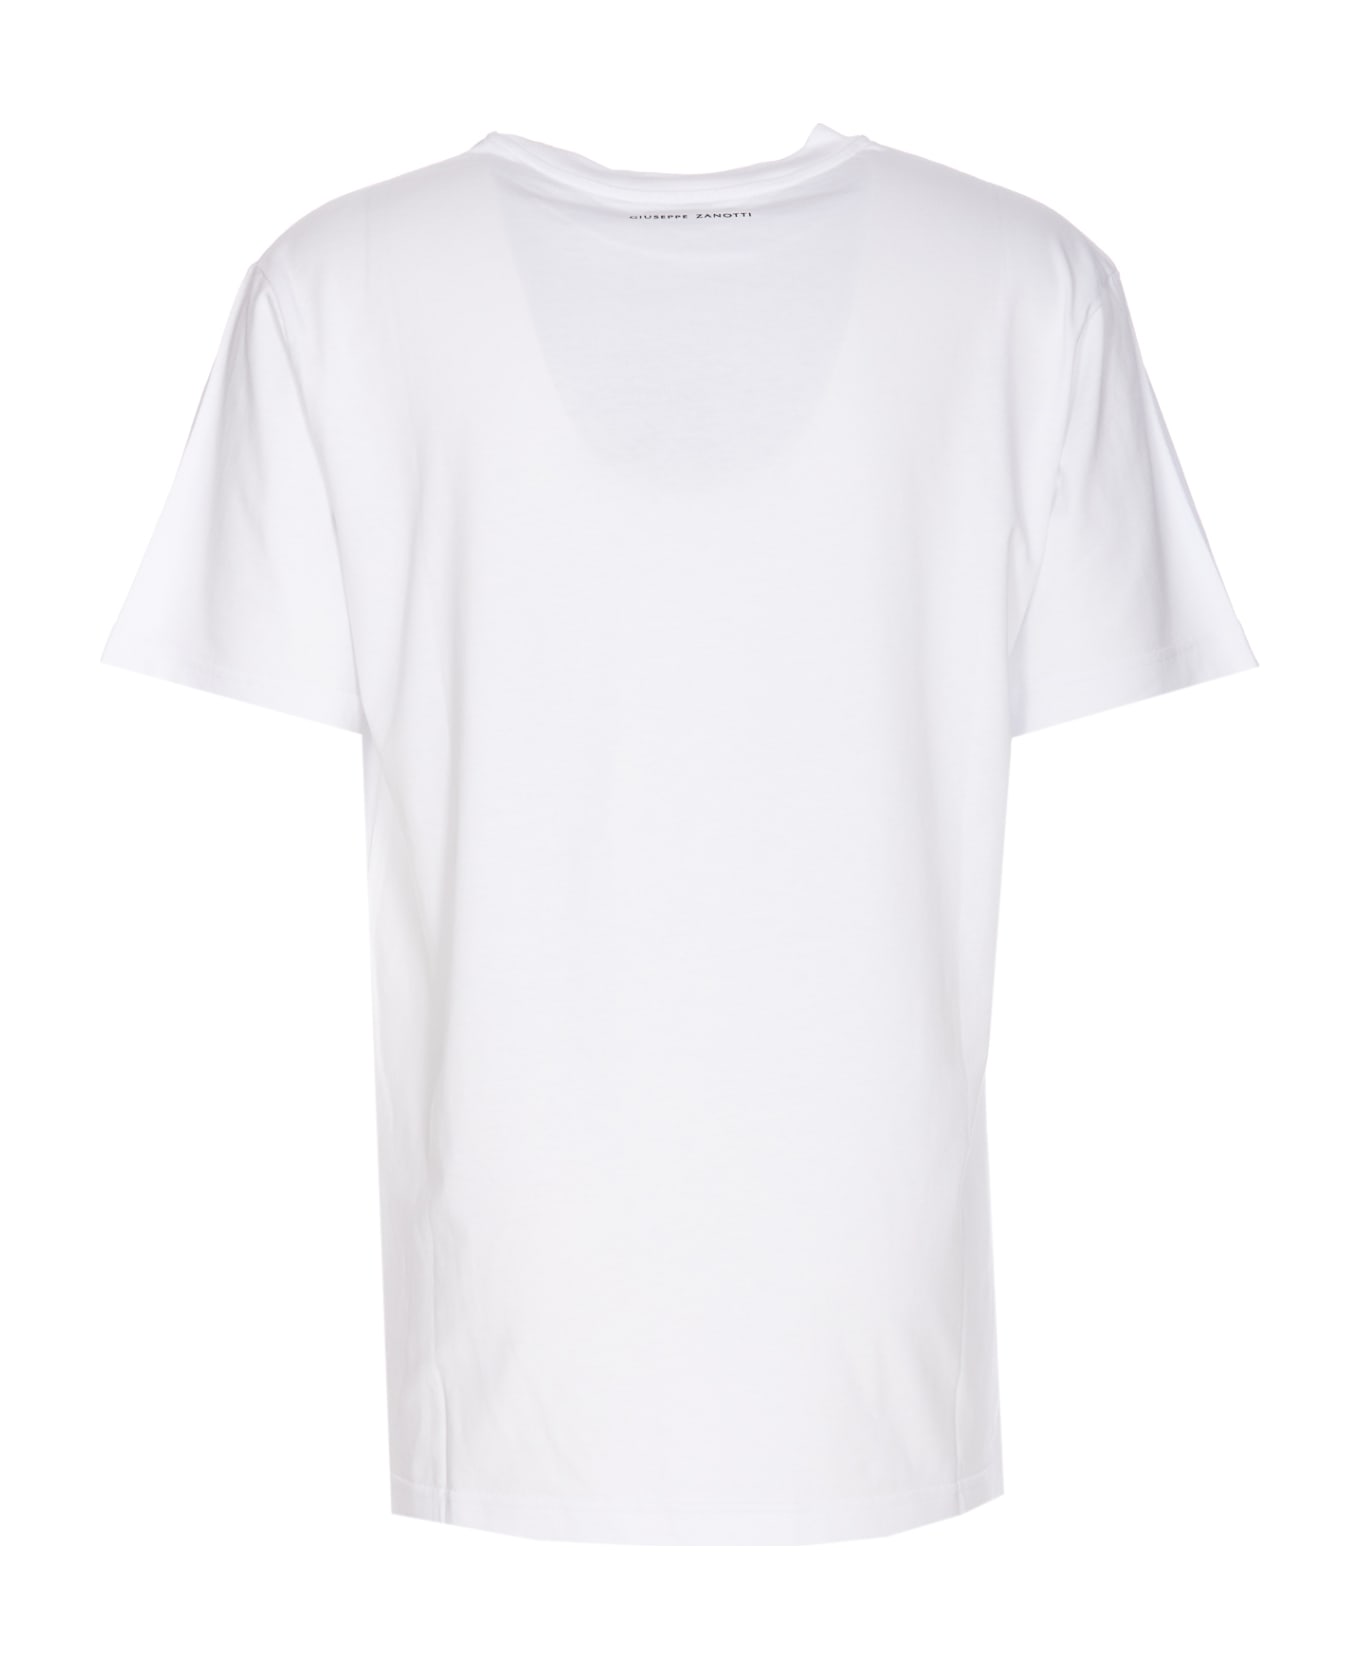 Giuseppe Zanotti Logo T-shirt - White シャツ